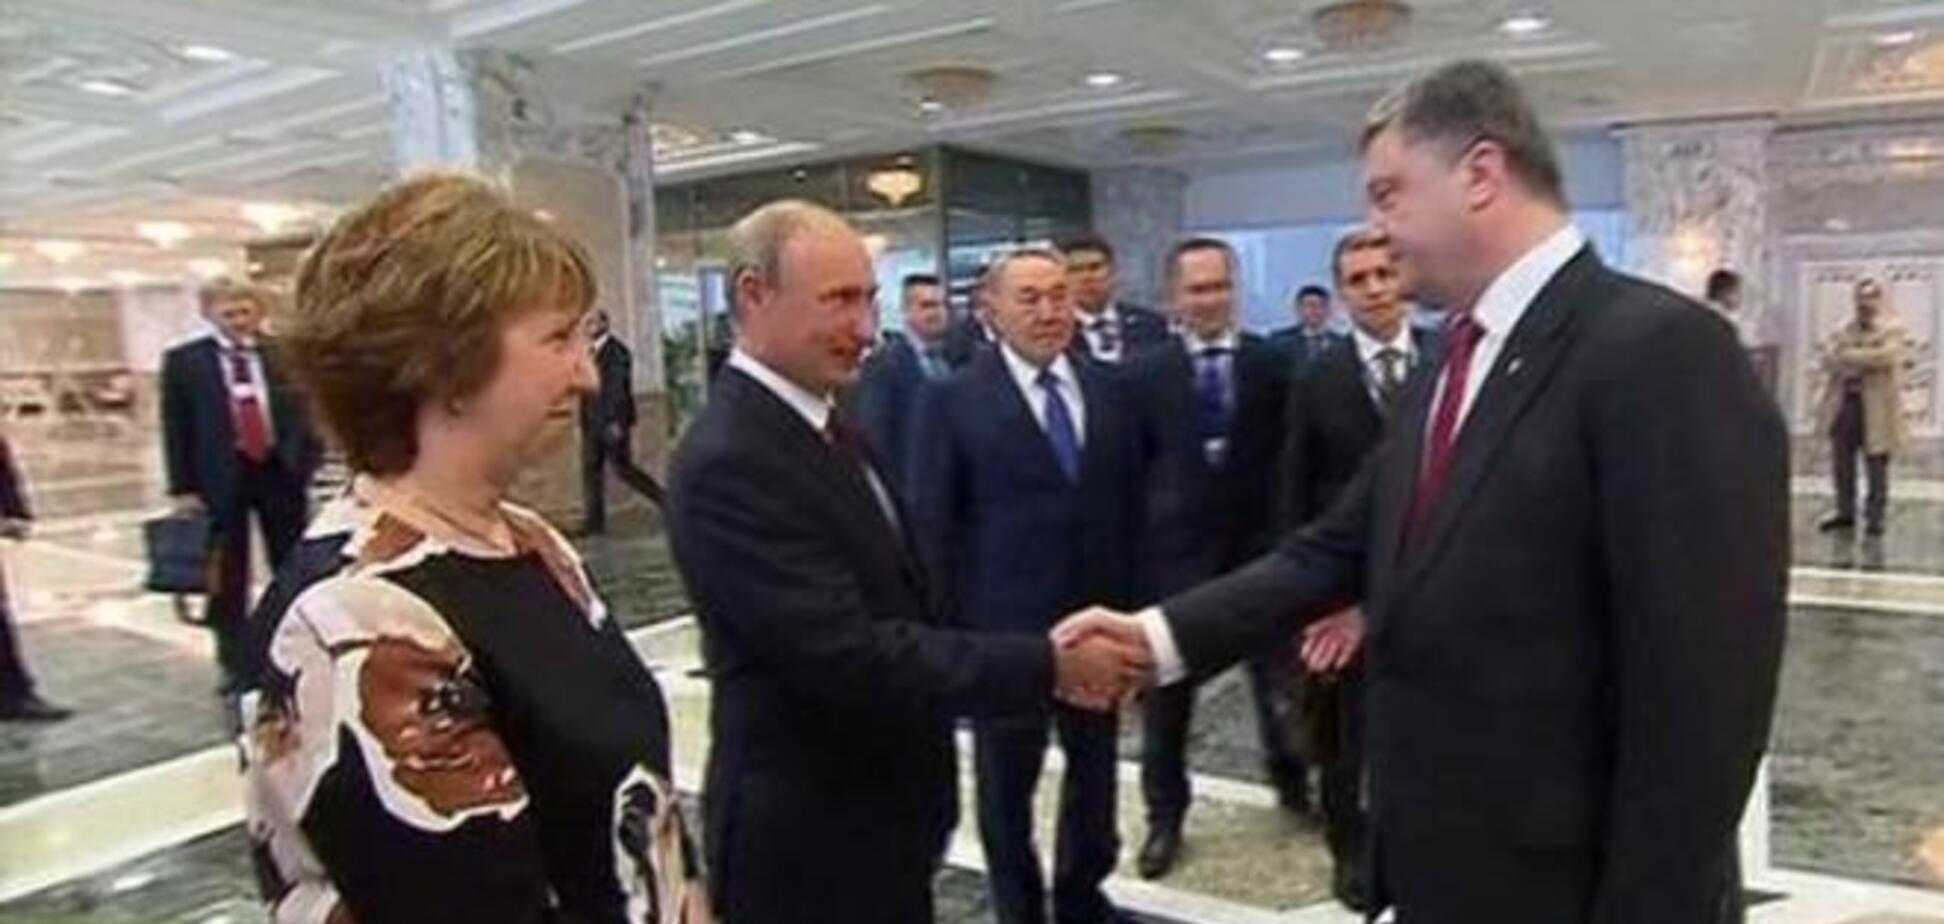 Жириновский о встрече Путина и Порошенко: жал же руки Молотов Риббентропу, хотя знал, что скоро война